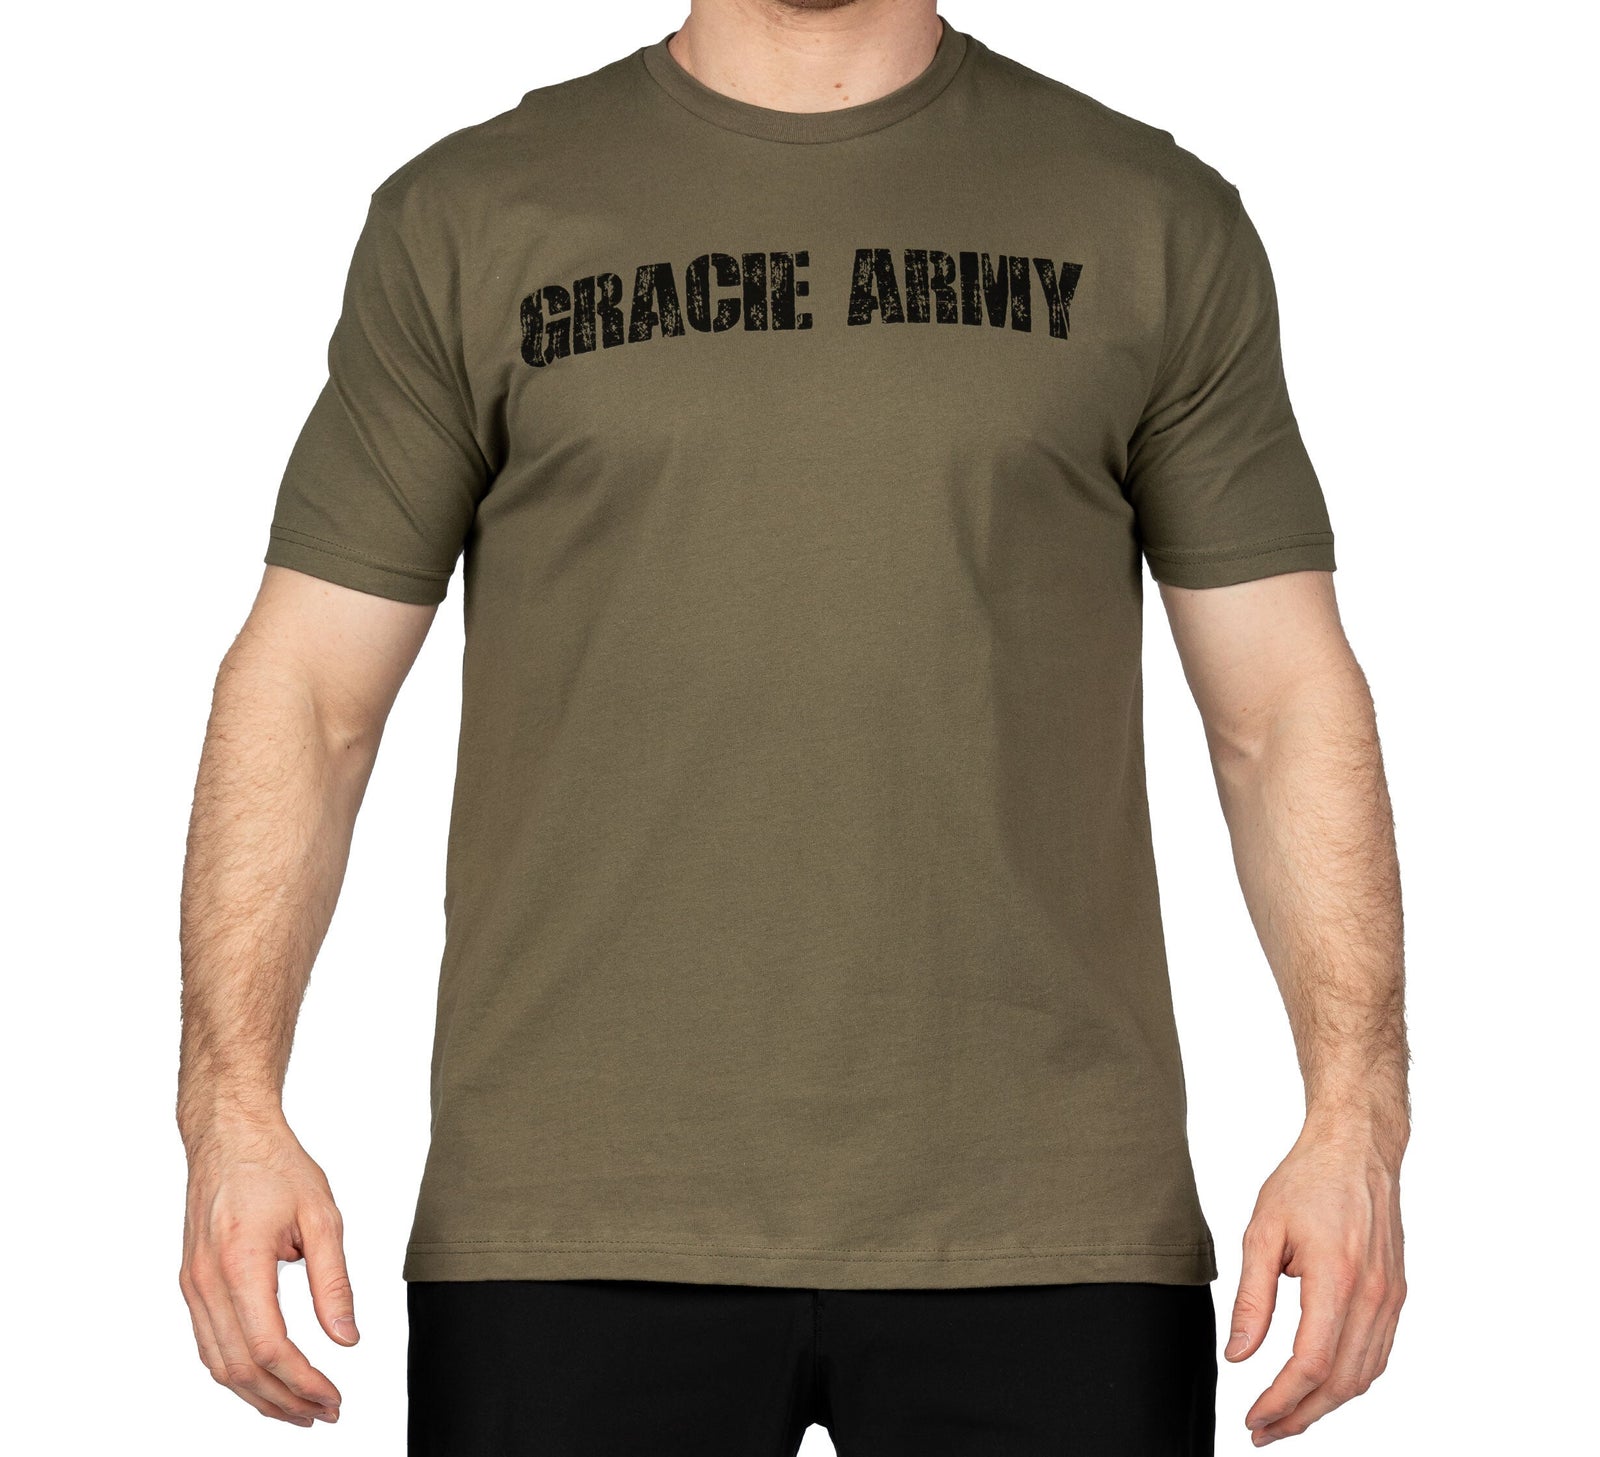 Royce Gracie "Gracie Army" T-Shirt - YOUTH